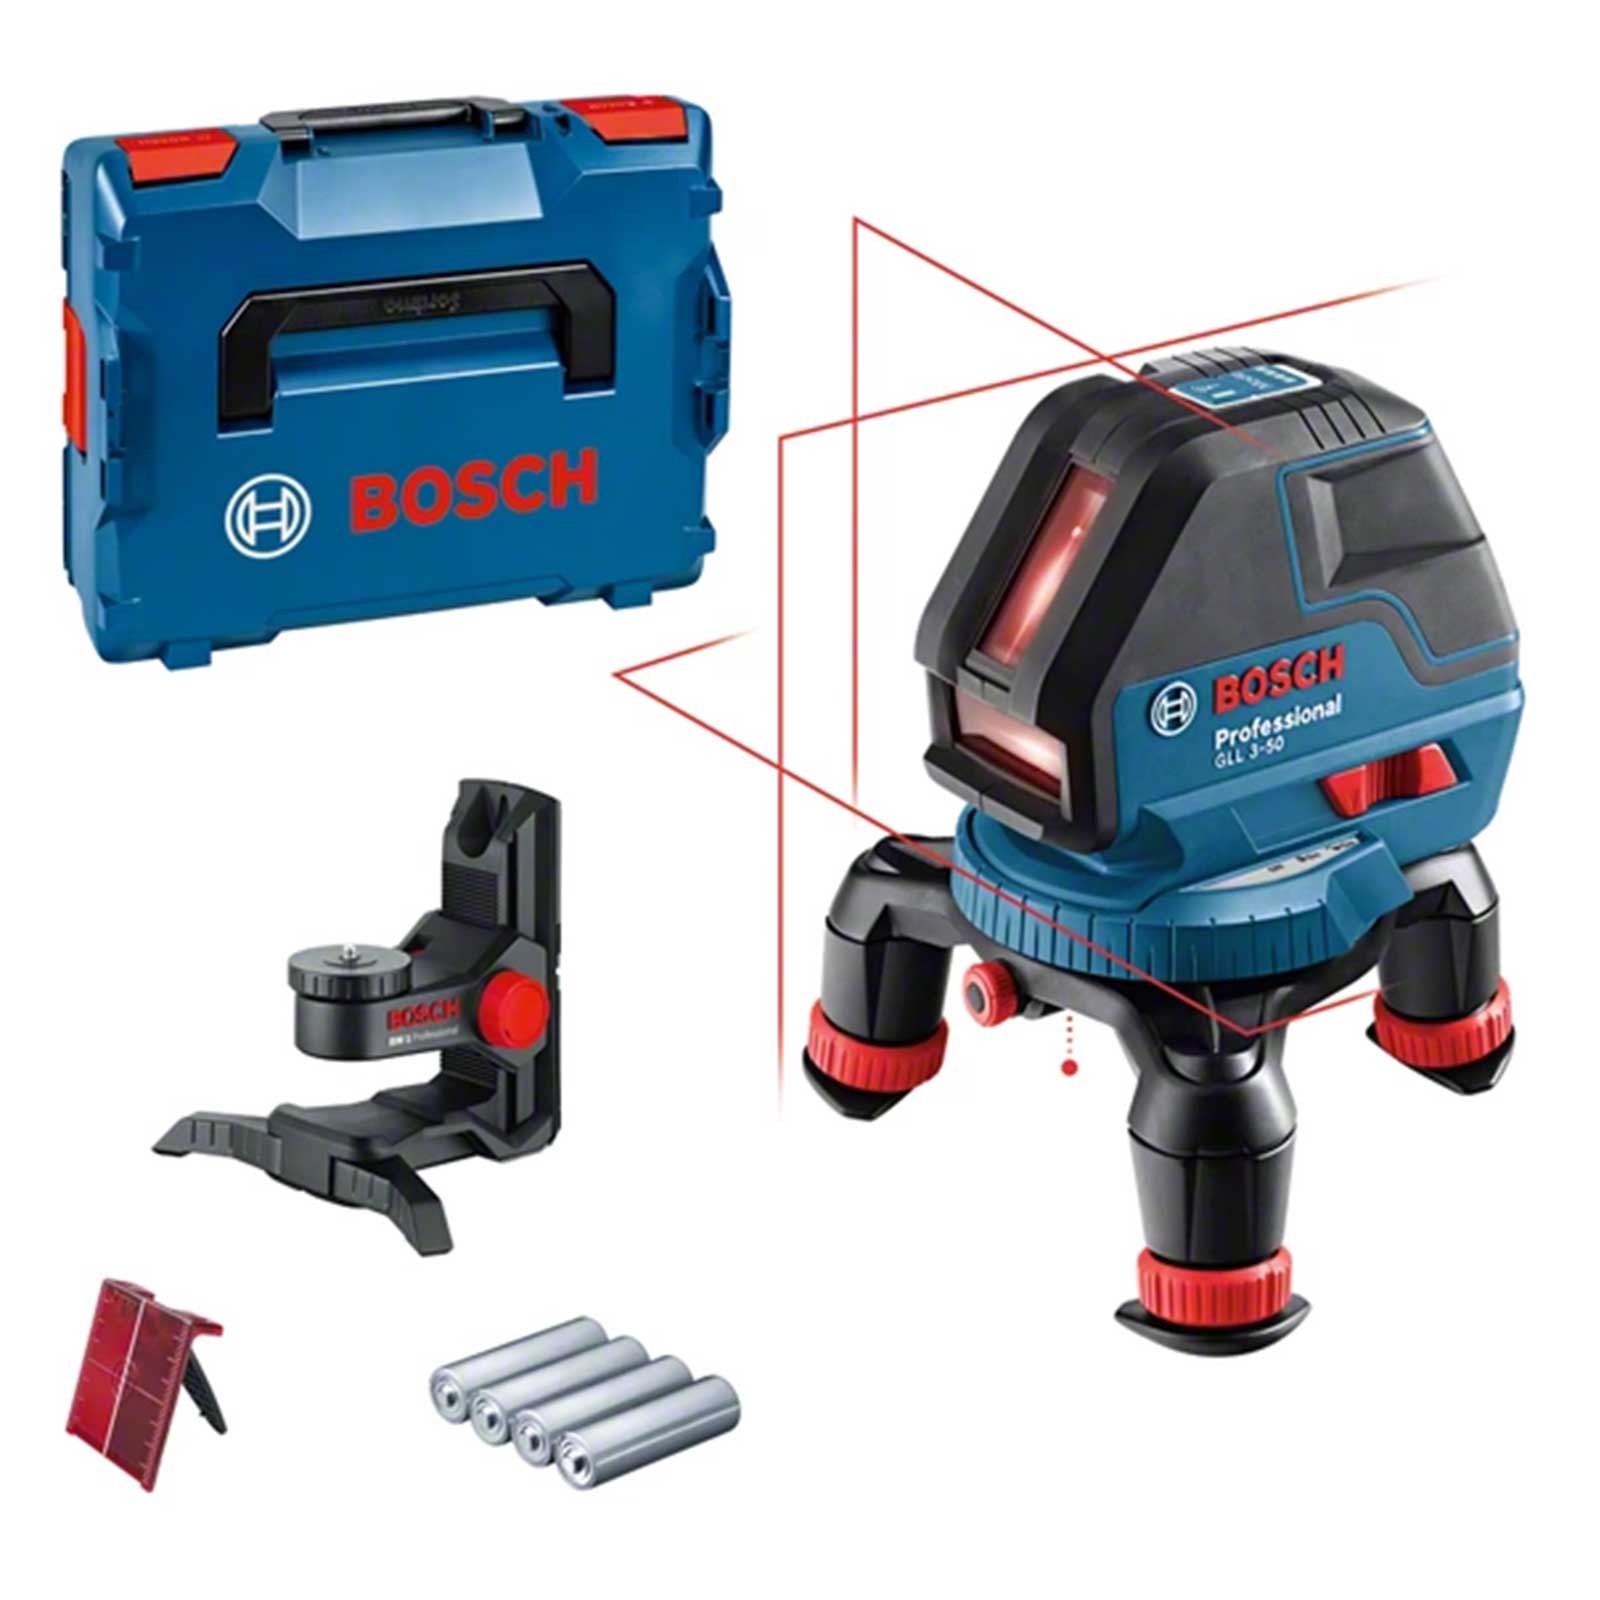 Bosch GLL 3-50 Professional livella laser a linee + Supporto BM 1 + box